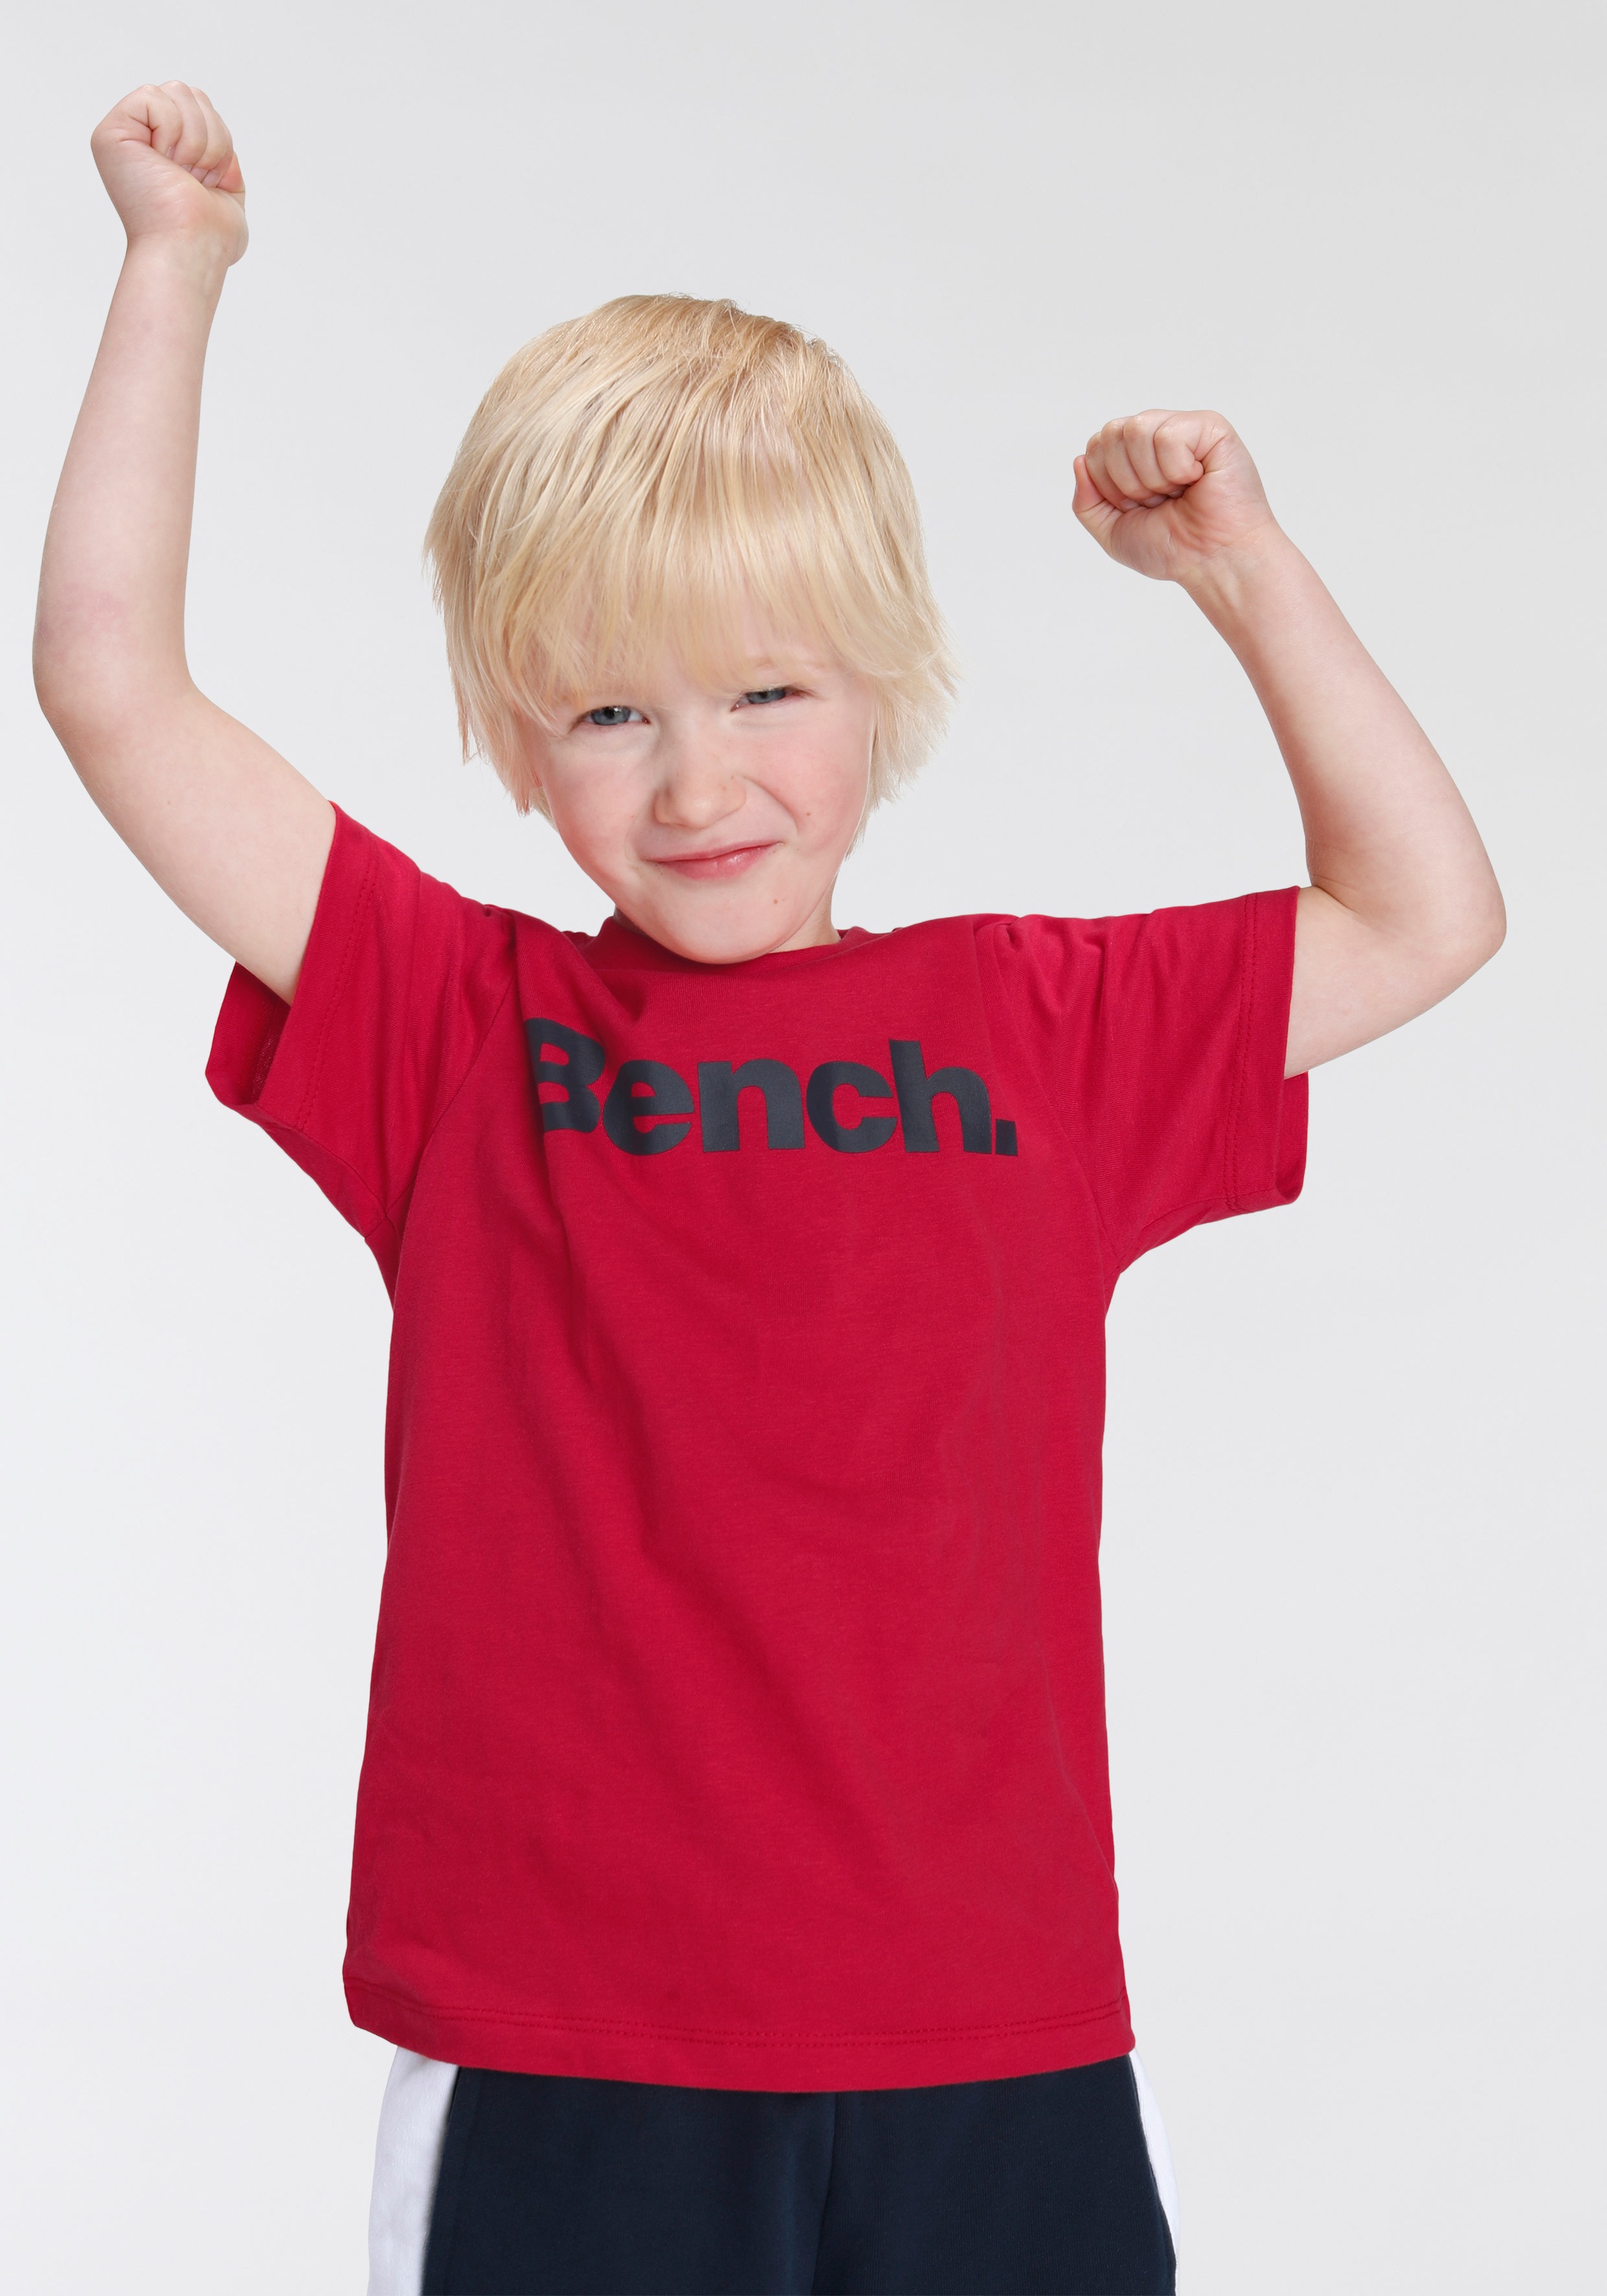 Bench. T-Shirt & Sweatbermudas, Online-Shop bestellen im tlg.) 2 (Set